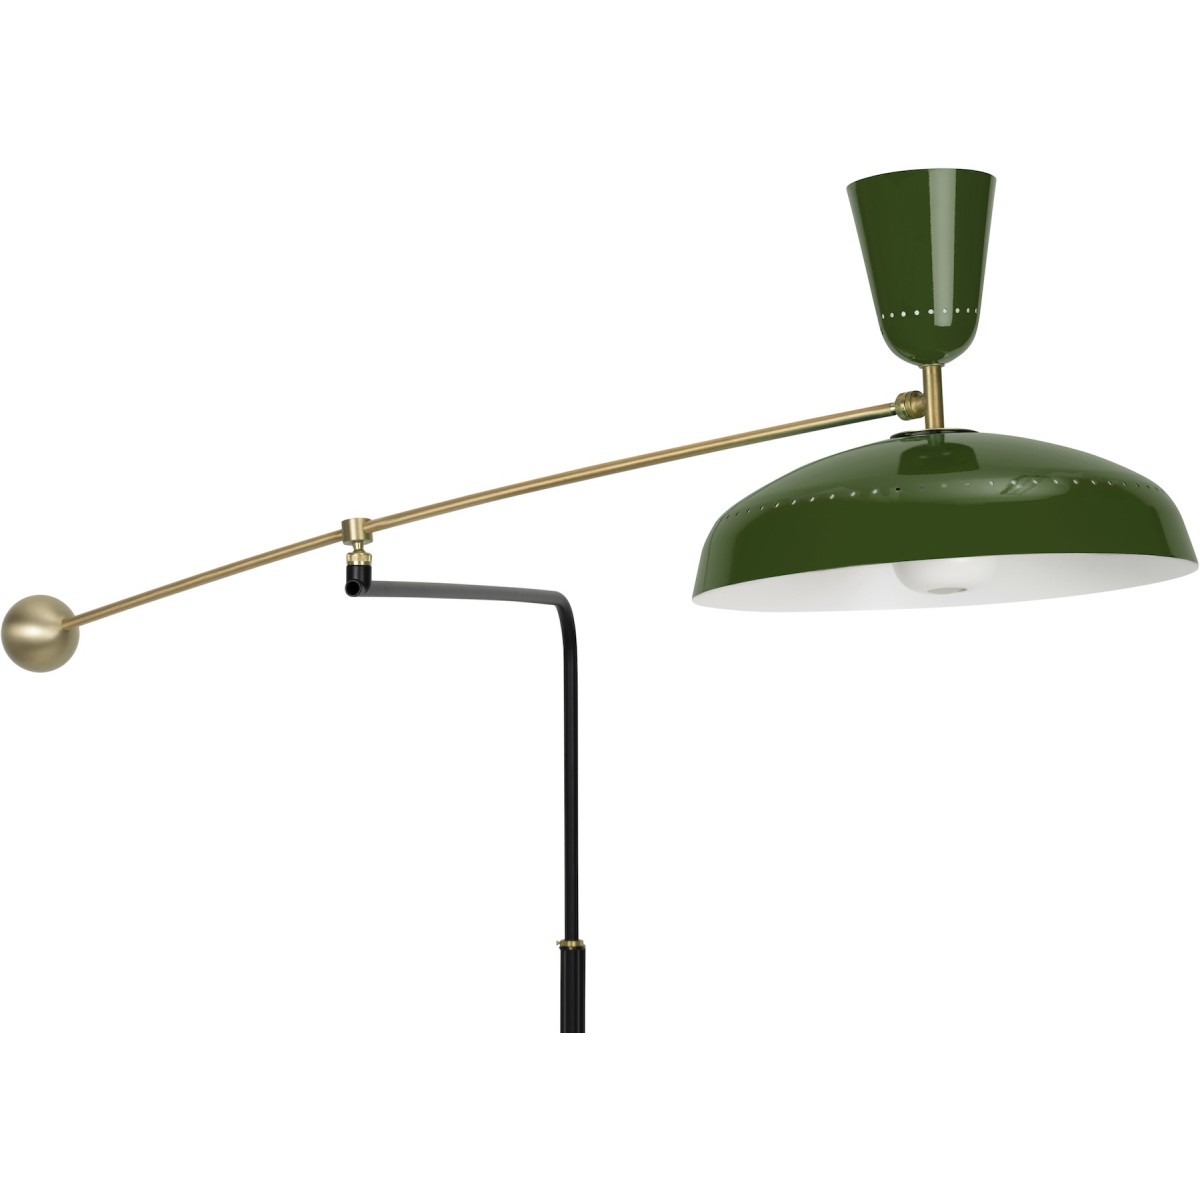 British Green – G1 wall lamp